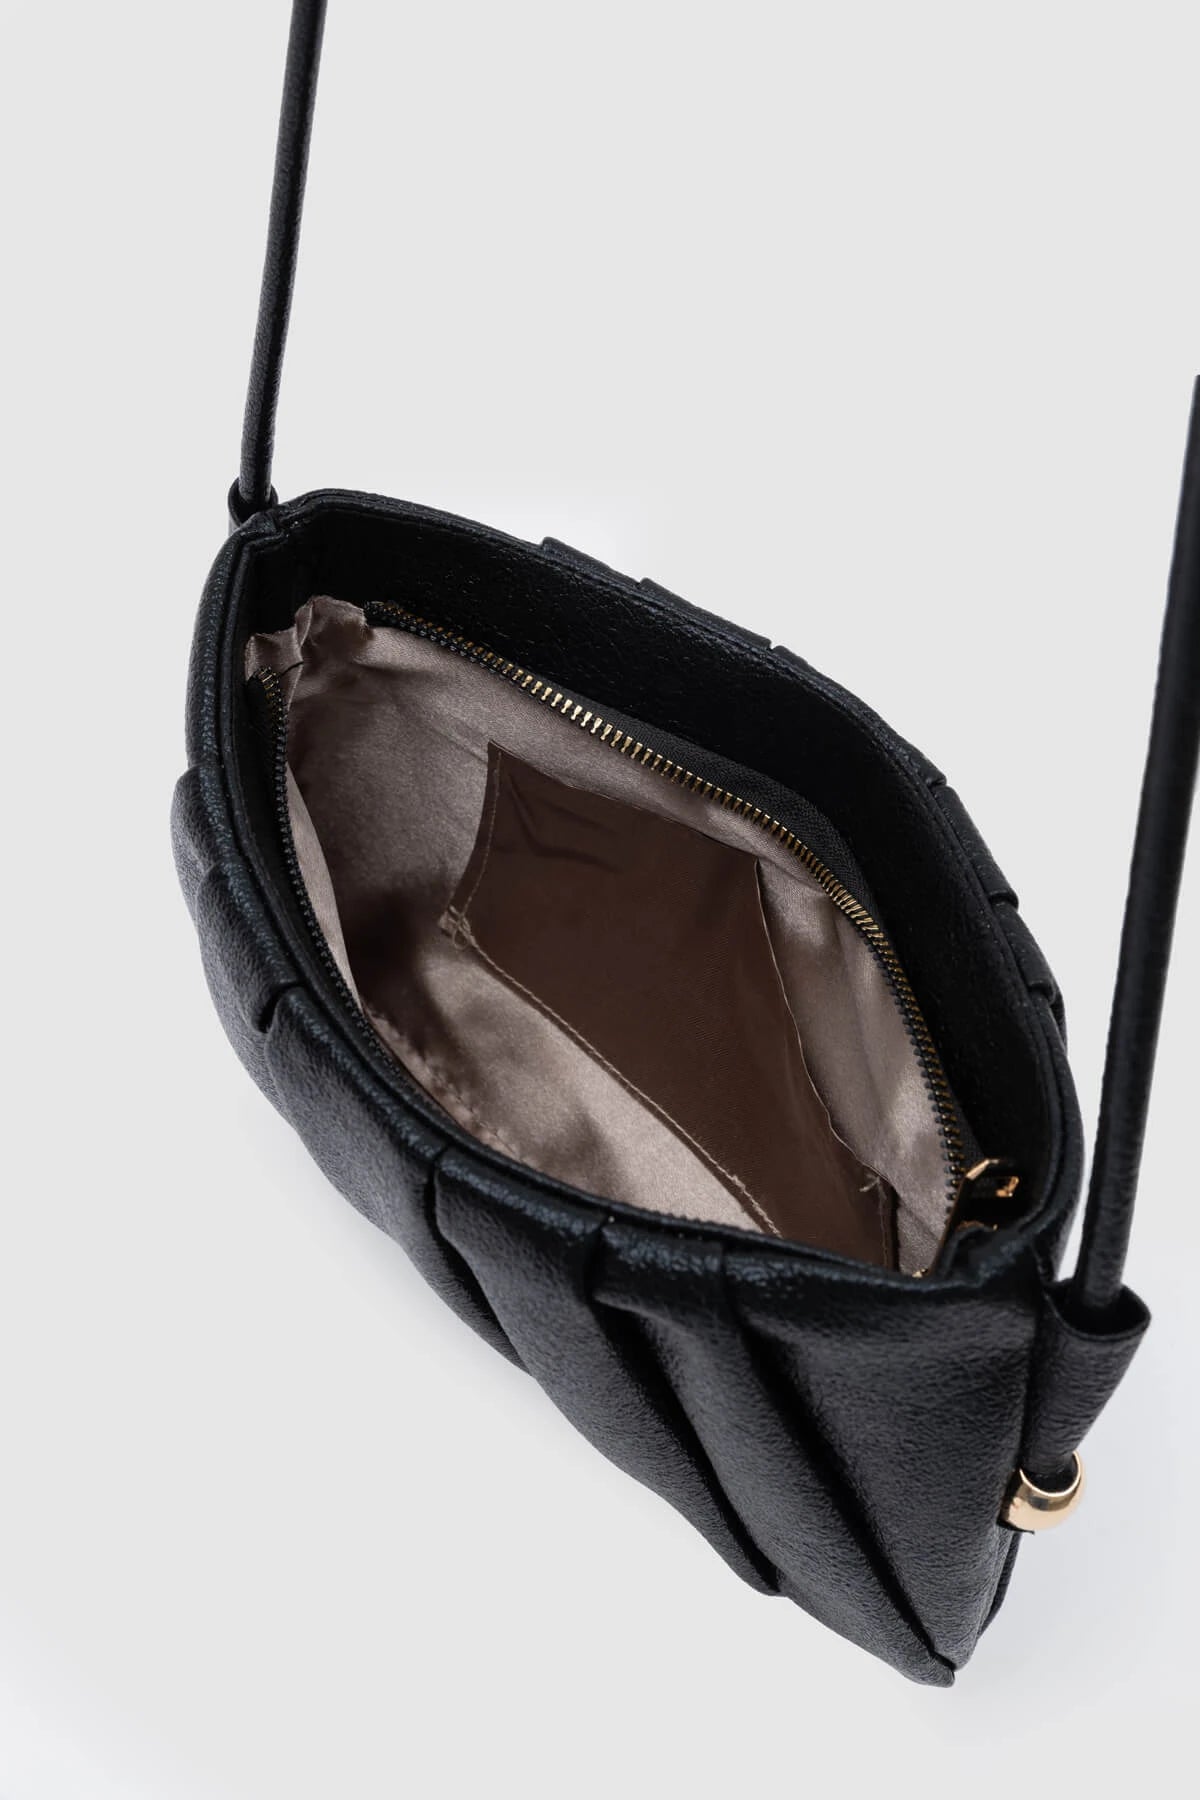 Metallic Long Strap Shoulder Bag shoulder bag LUNARITY GARAGE   